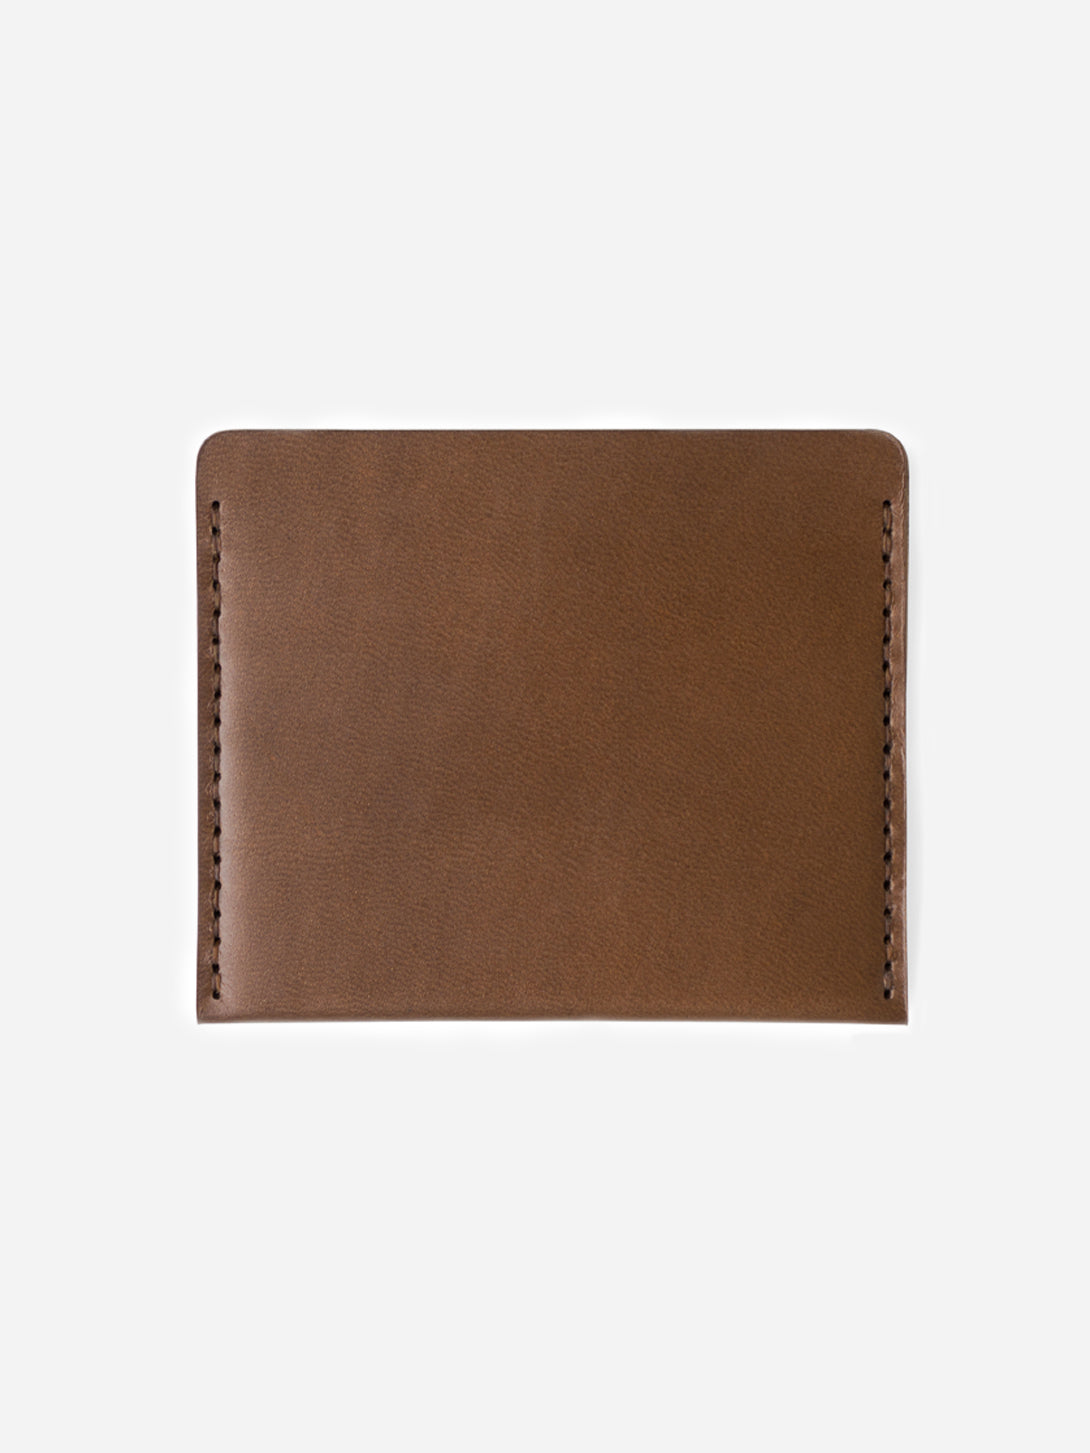 BARK mens card holder brown leather wallet cascade wallet makr